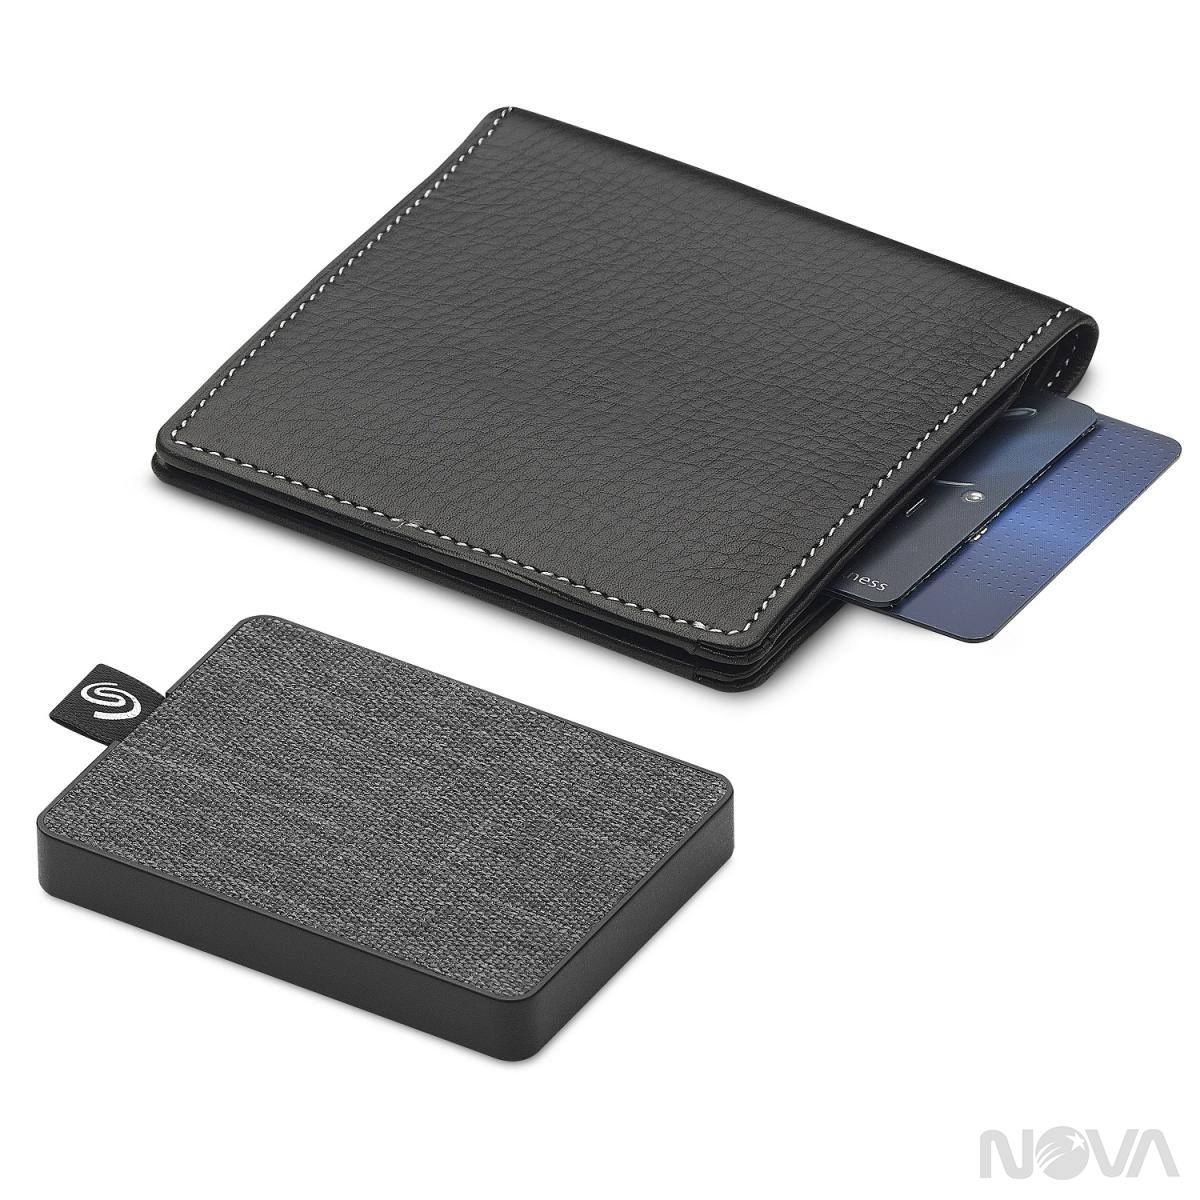 希捷科技發表全新 One Touch SSD